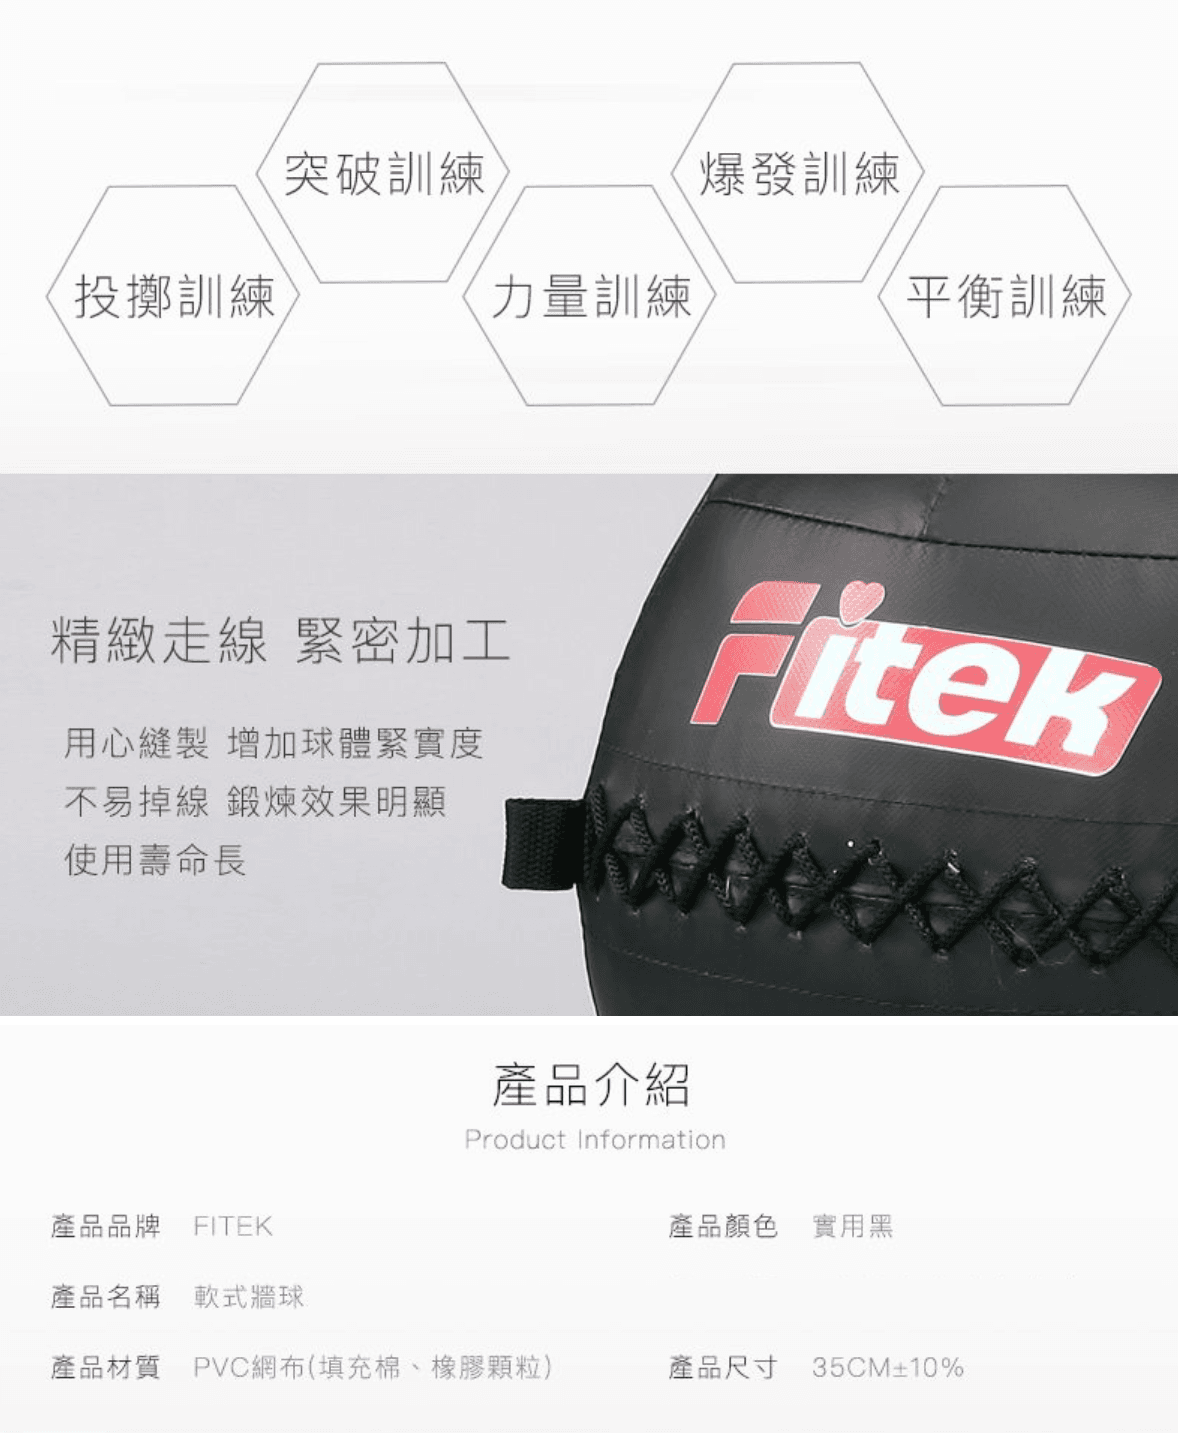 軟式藥球牆球2KG【Fitek】 4